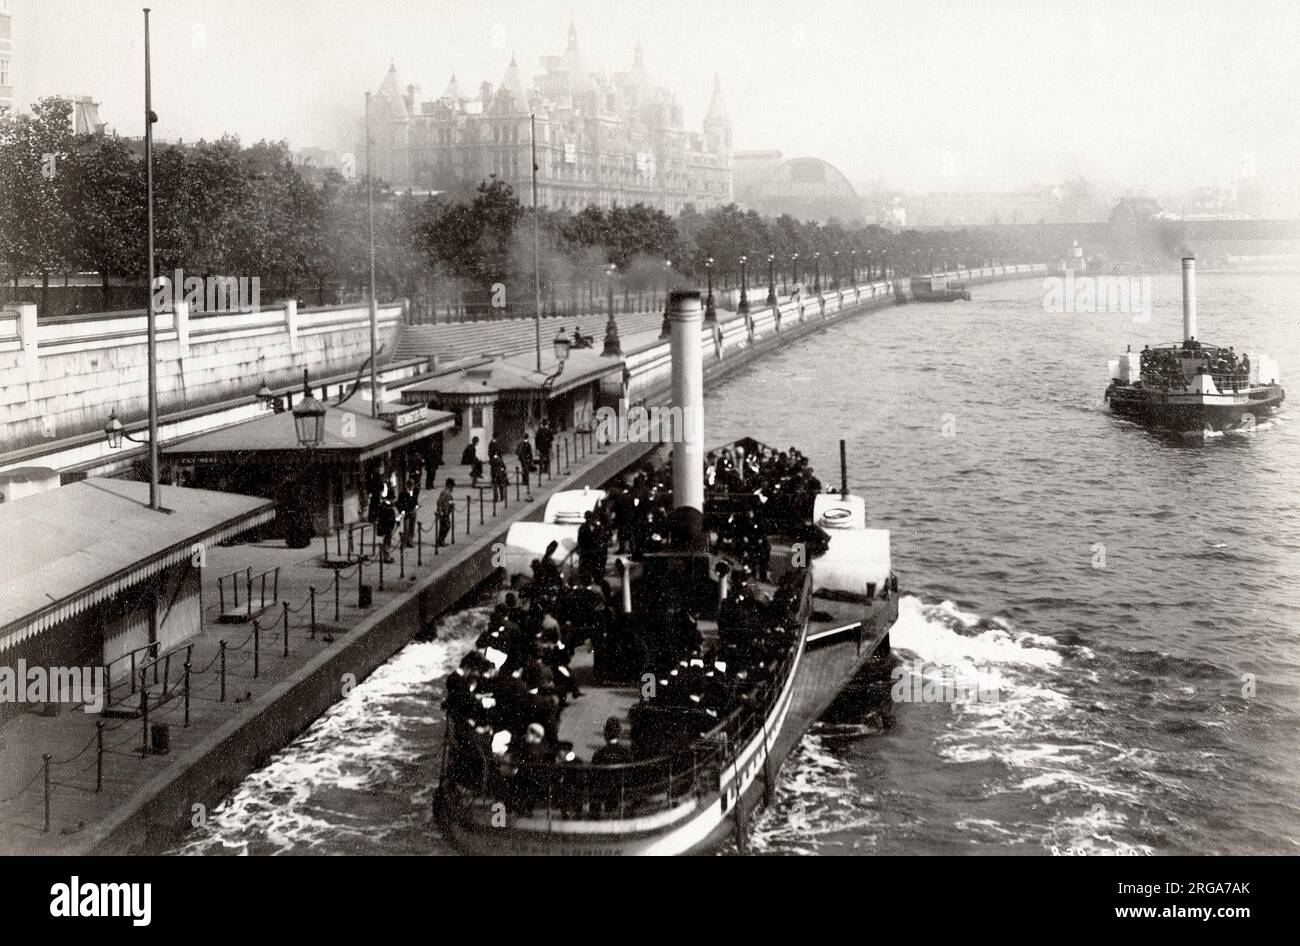 Photographie vintage du 19th siècle : rive de la Tamise et lancement à vapeur, Londres Banque D'Images